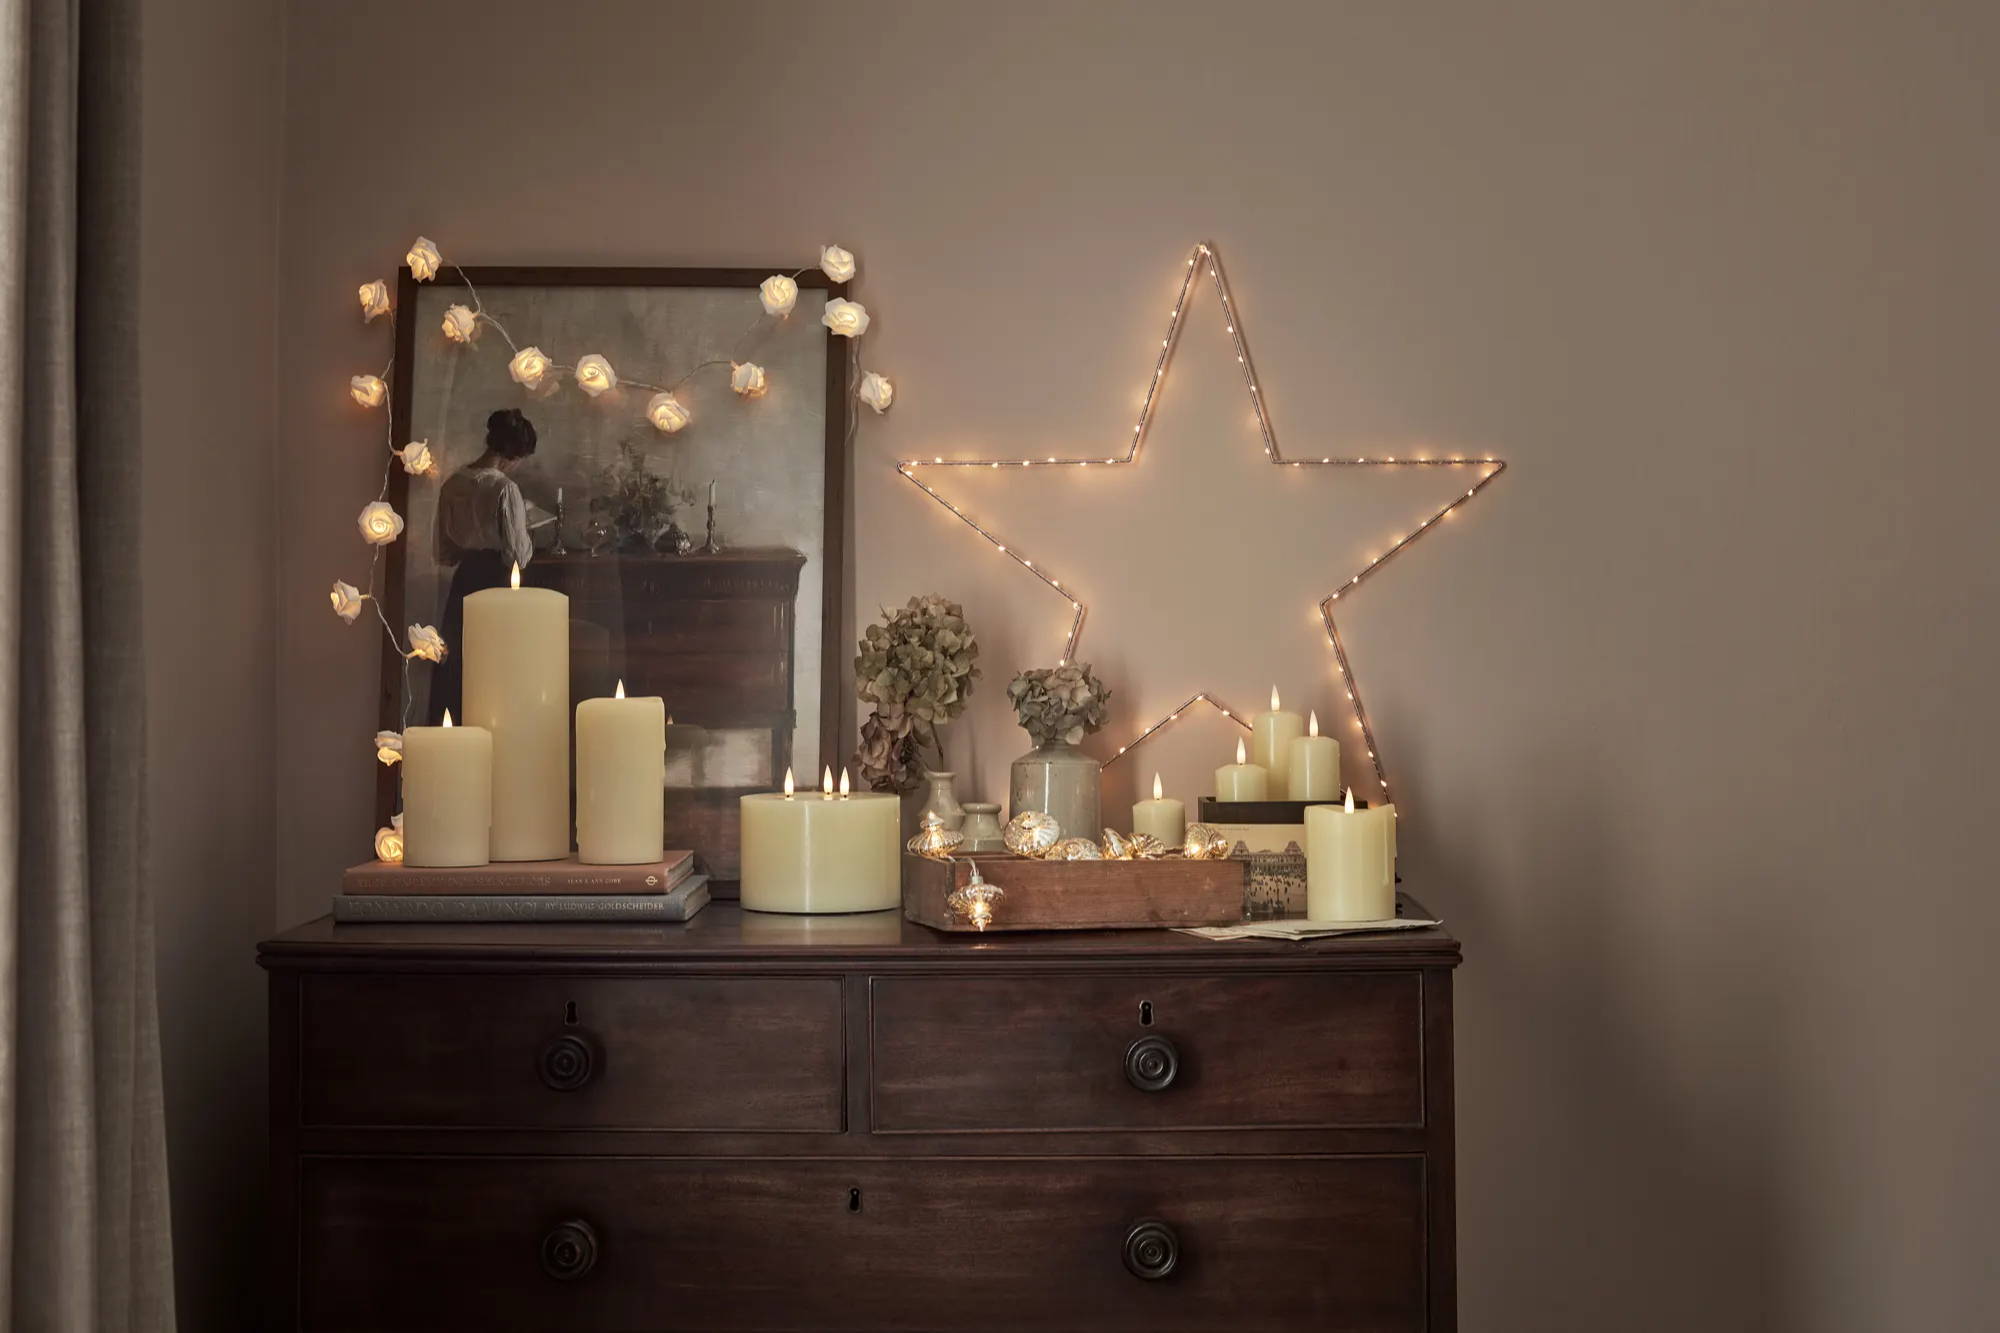 Eine Kommode mit aufgestellten LED Kerzen, einem LED Stern und einer an einem Bilderrahmen drapierten Lichterkette